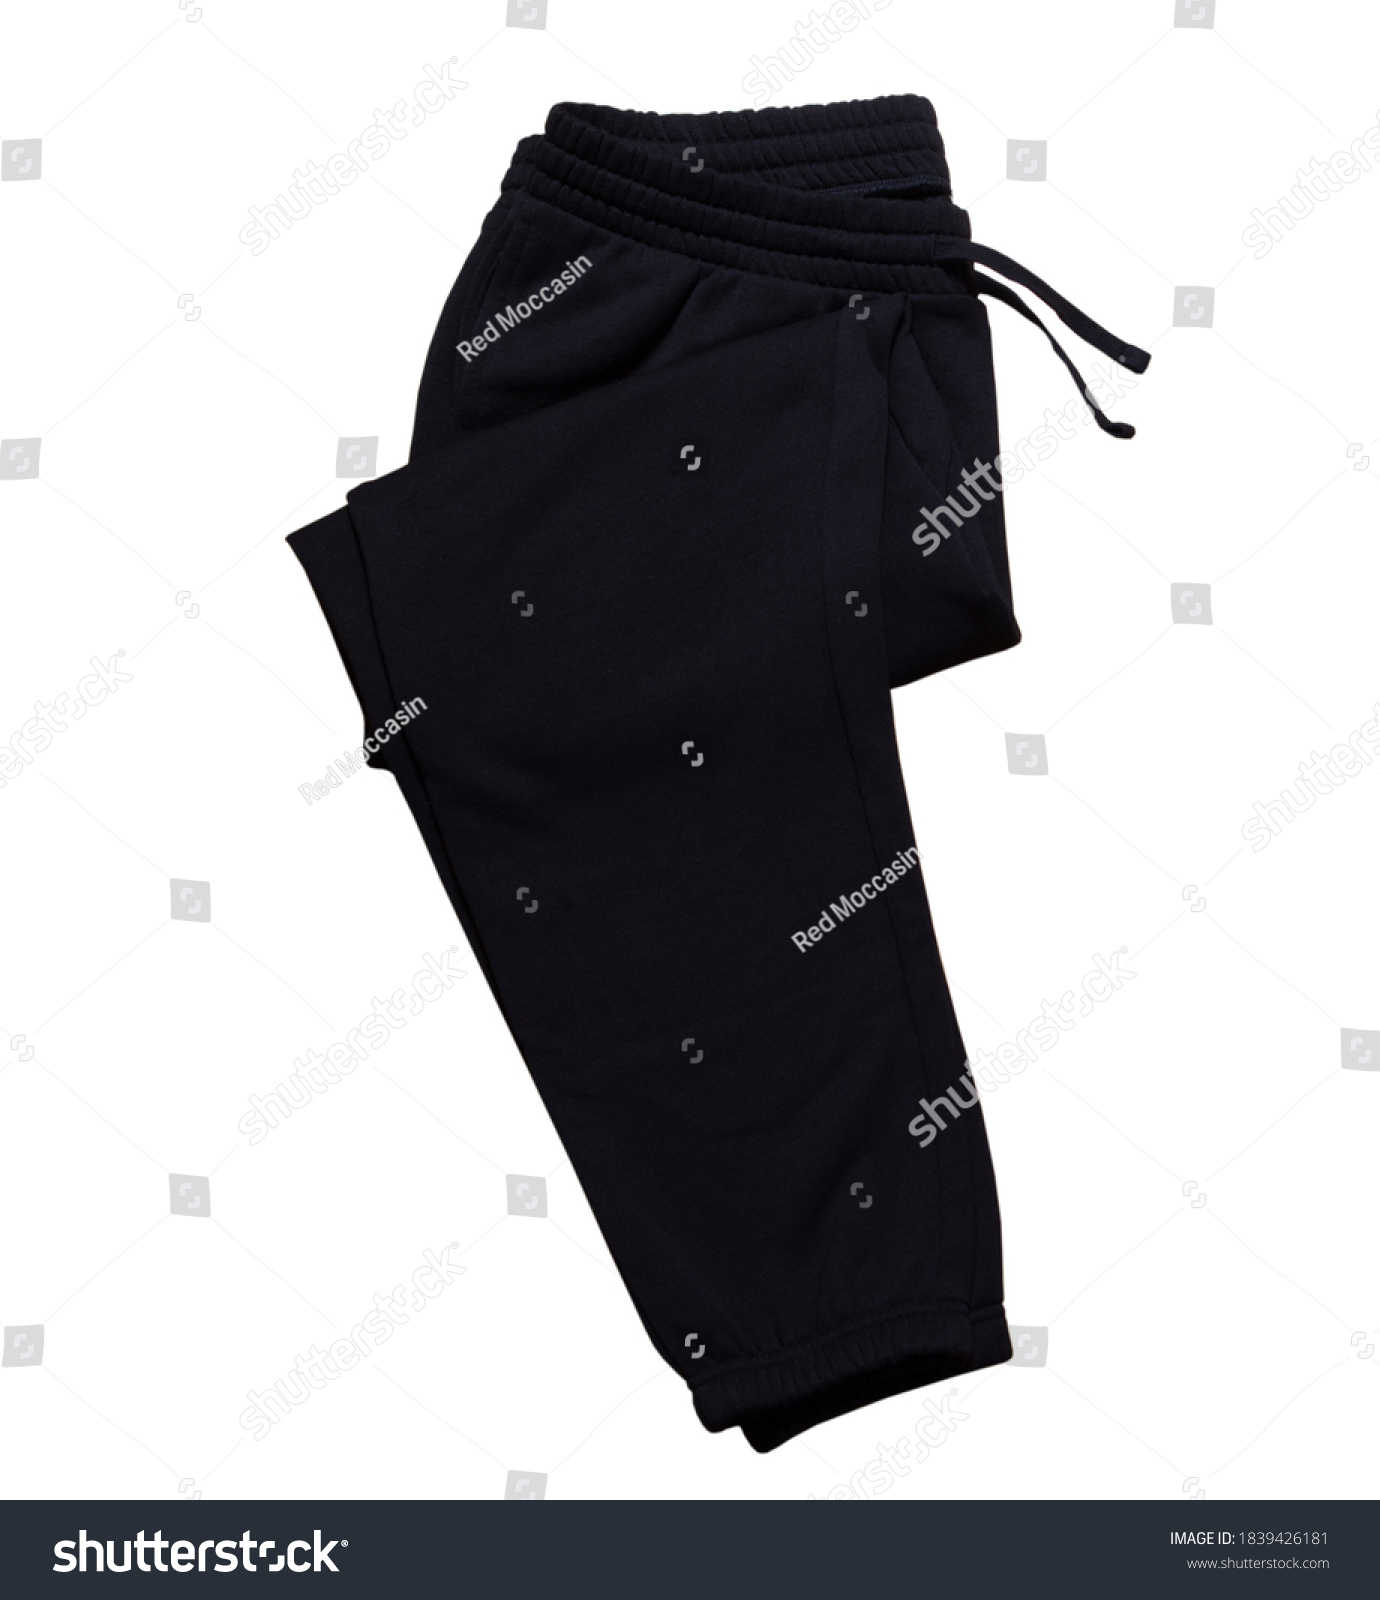 Folded Sweatpants Isolated On White Background Stock Photo 1839426181 ...